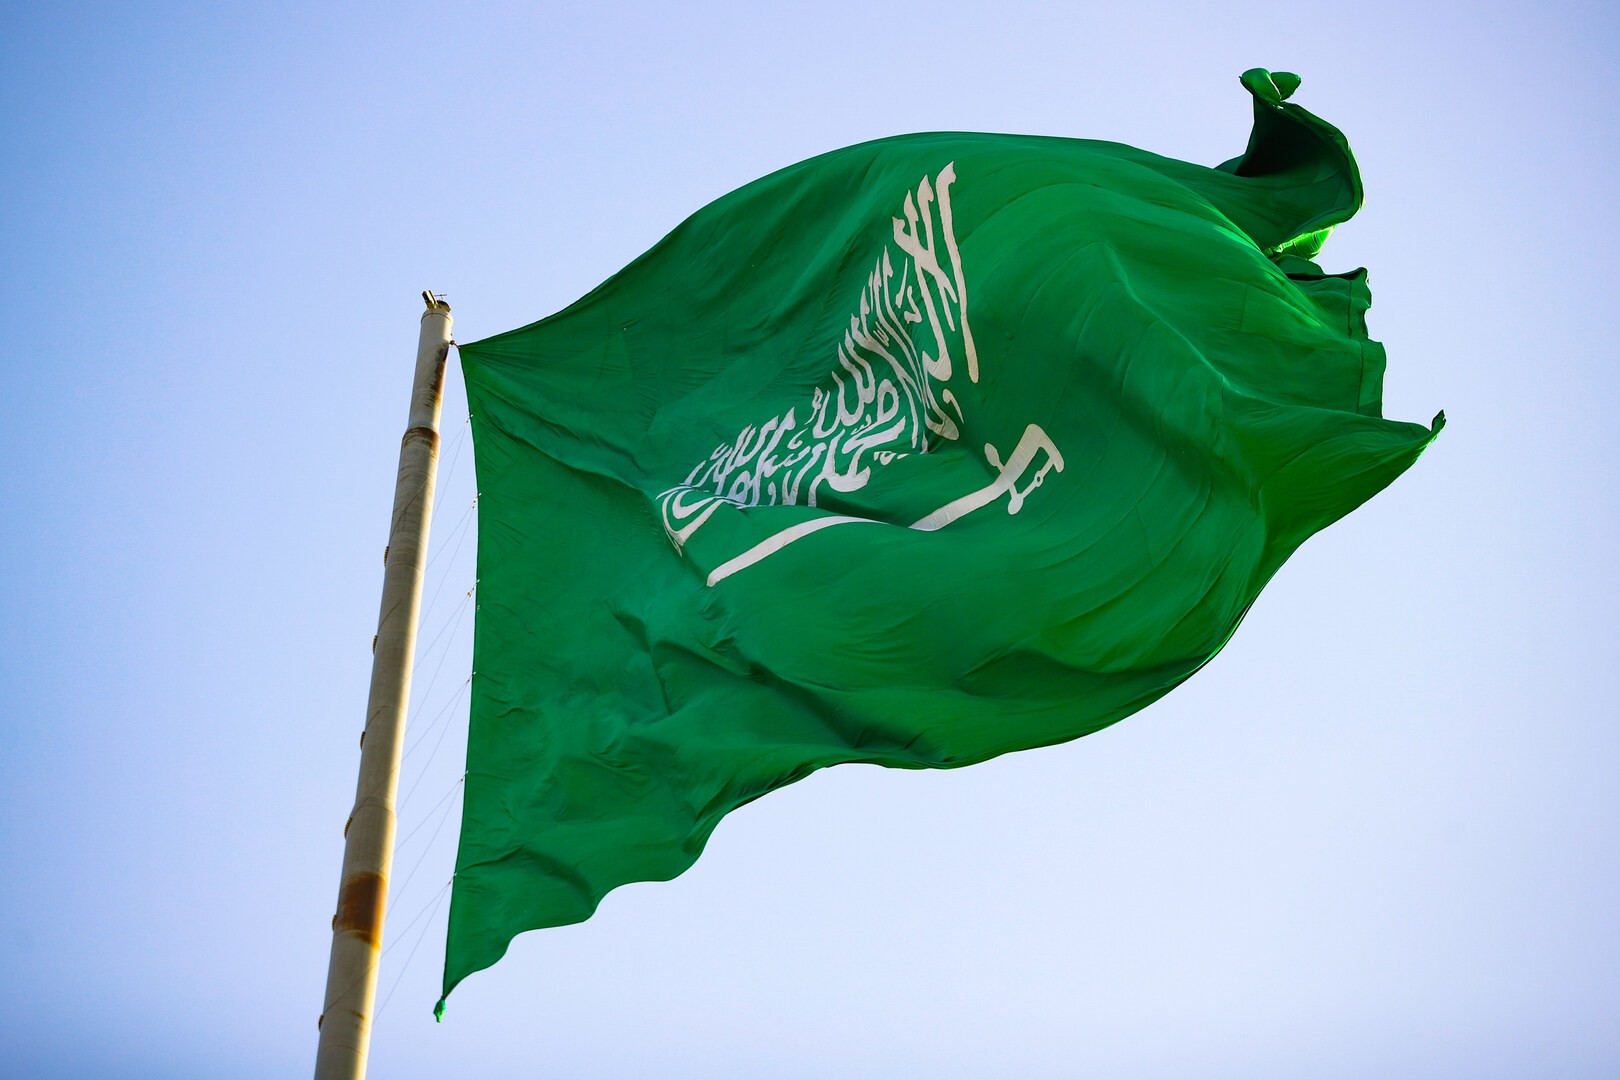 السعودية تحذر من مخاطر انفجار الأوضاع نتيجة استمرار الاحتلال وحرمان الشعب الفلسطيني من حقوقه المشروعة